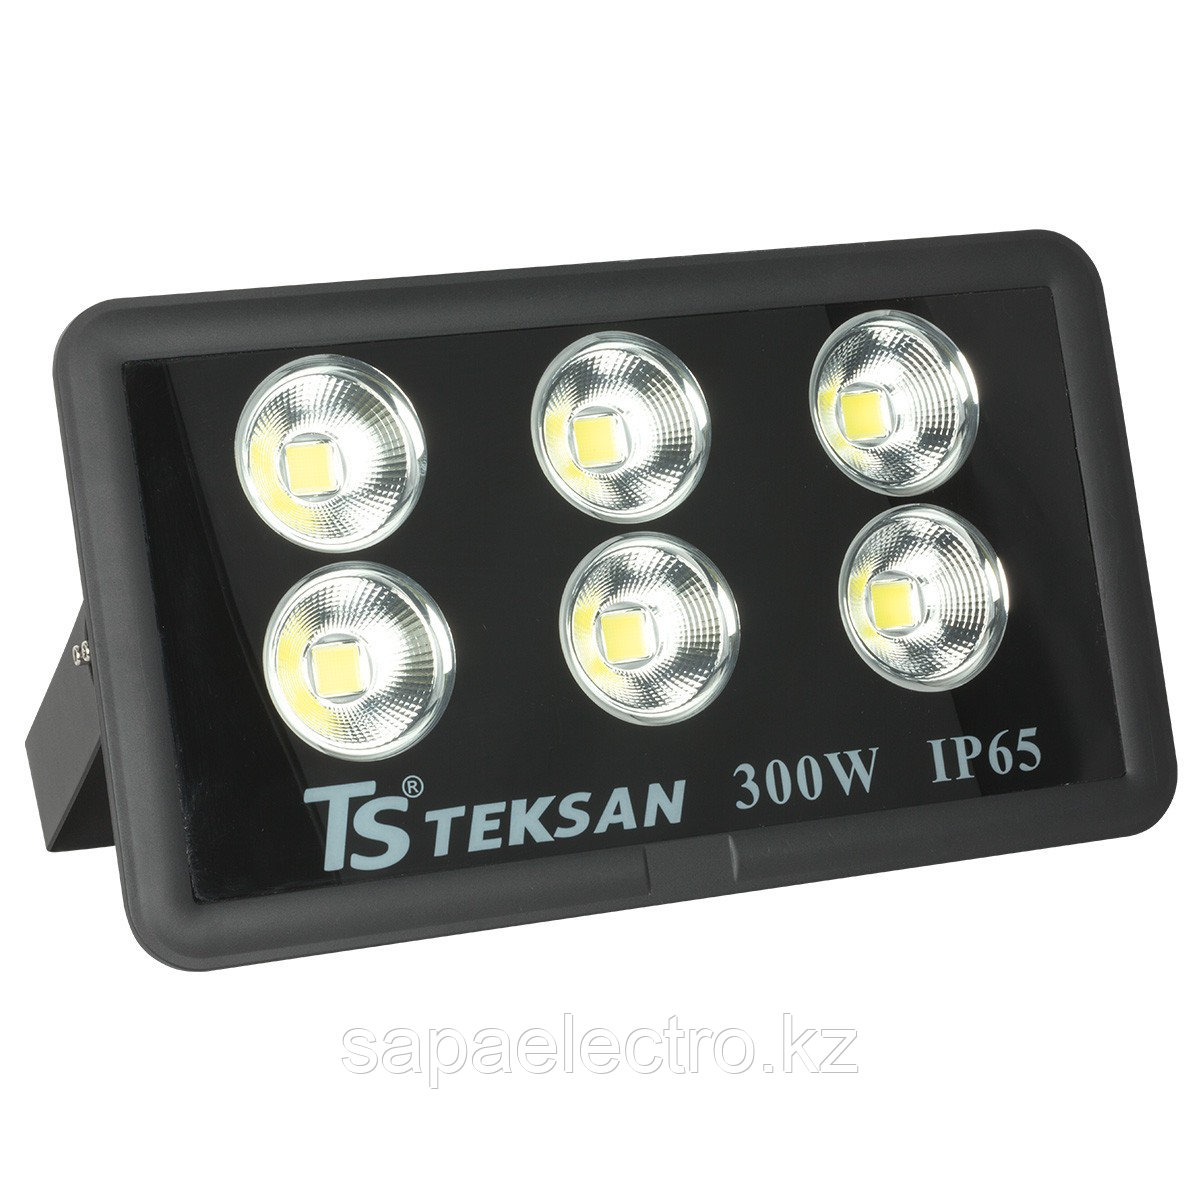 Прожектор LED TS008 300W 6000K (TS)1шт